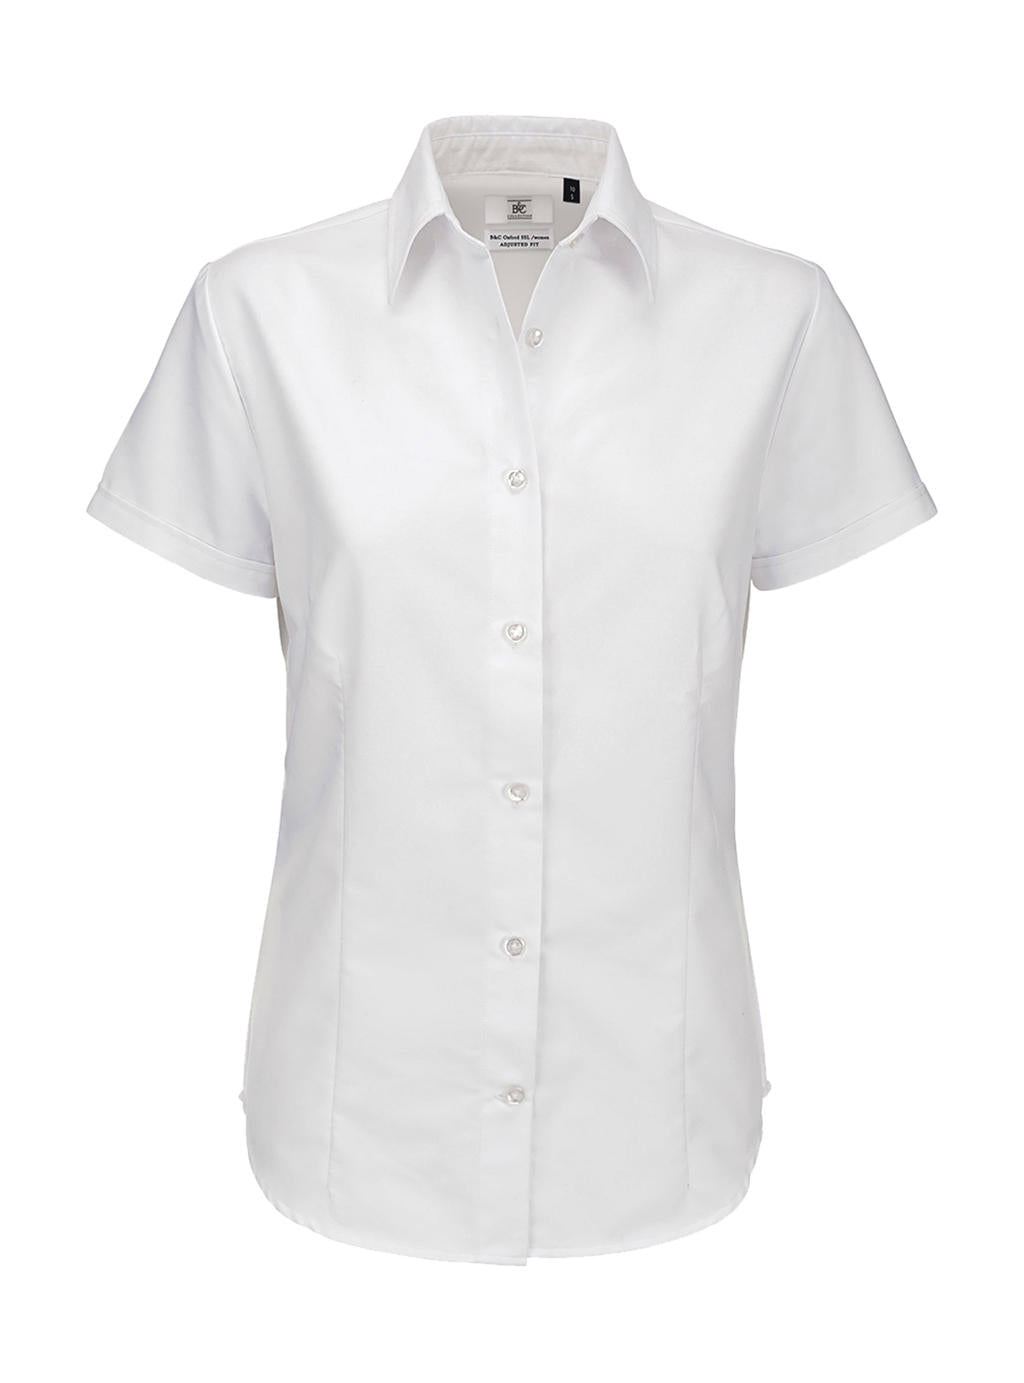 B&C Damen Business Oberteil Bluse T-Shirt Longsleeve Shirt kurzarm